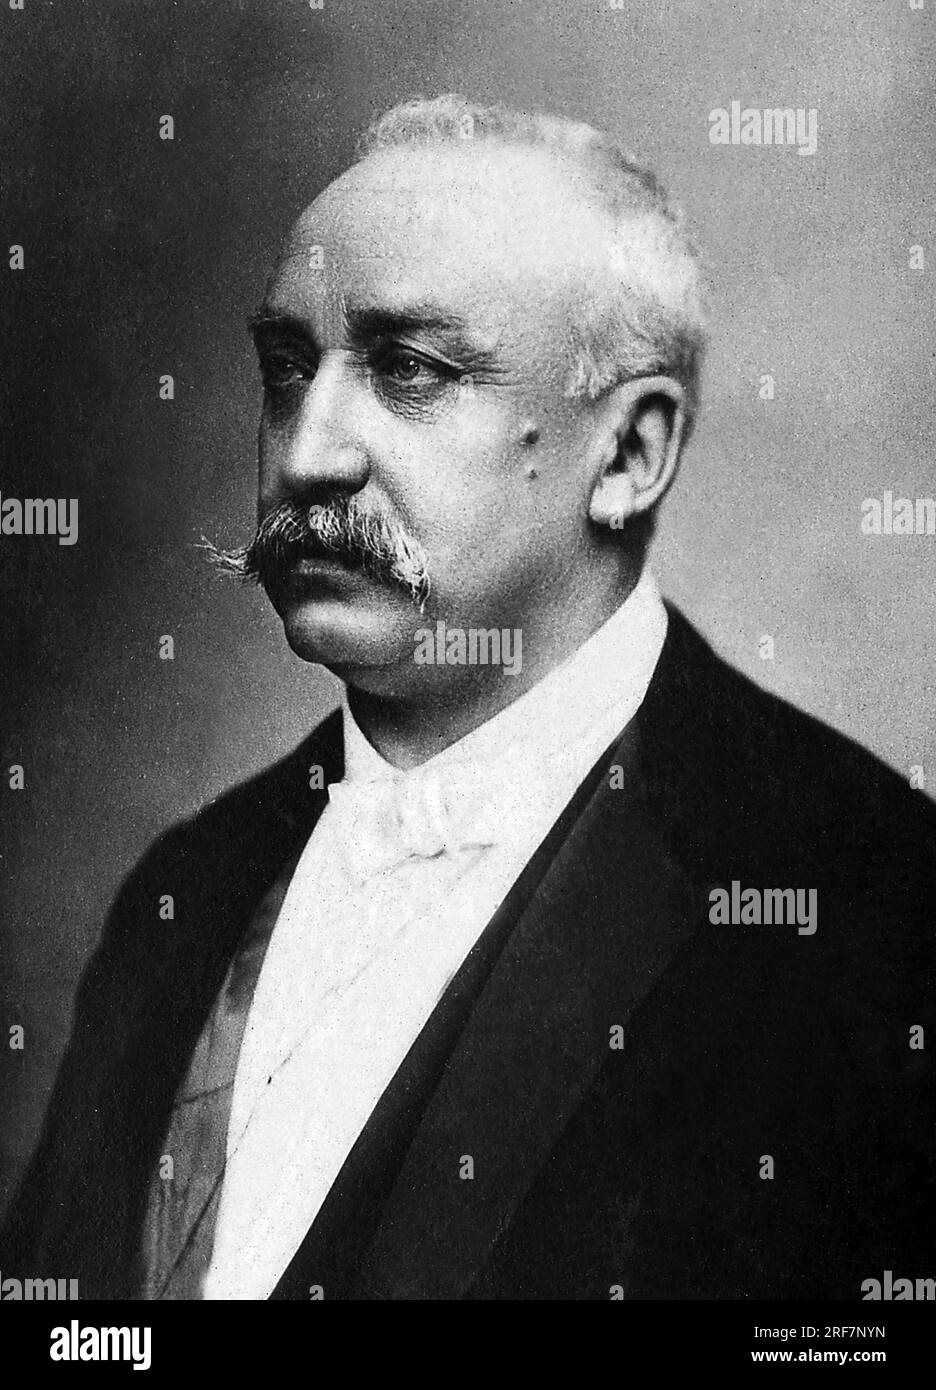 Portrait de Felix Faure (1841-1899), industriel et homme politique, republicain modere, il devint President de la Republique de 1895 a 1899. Stockfoto